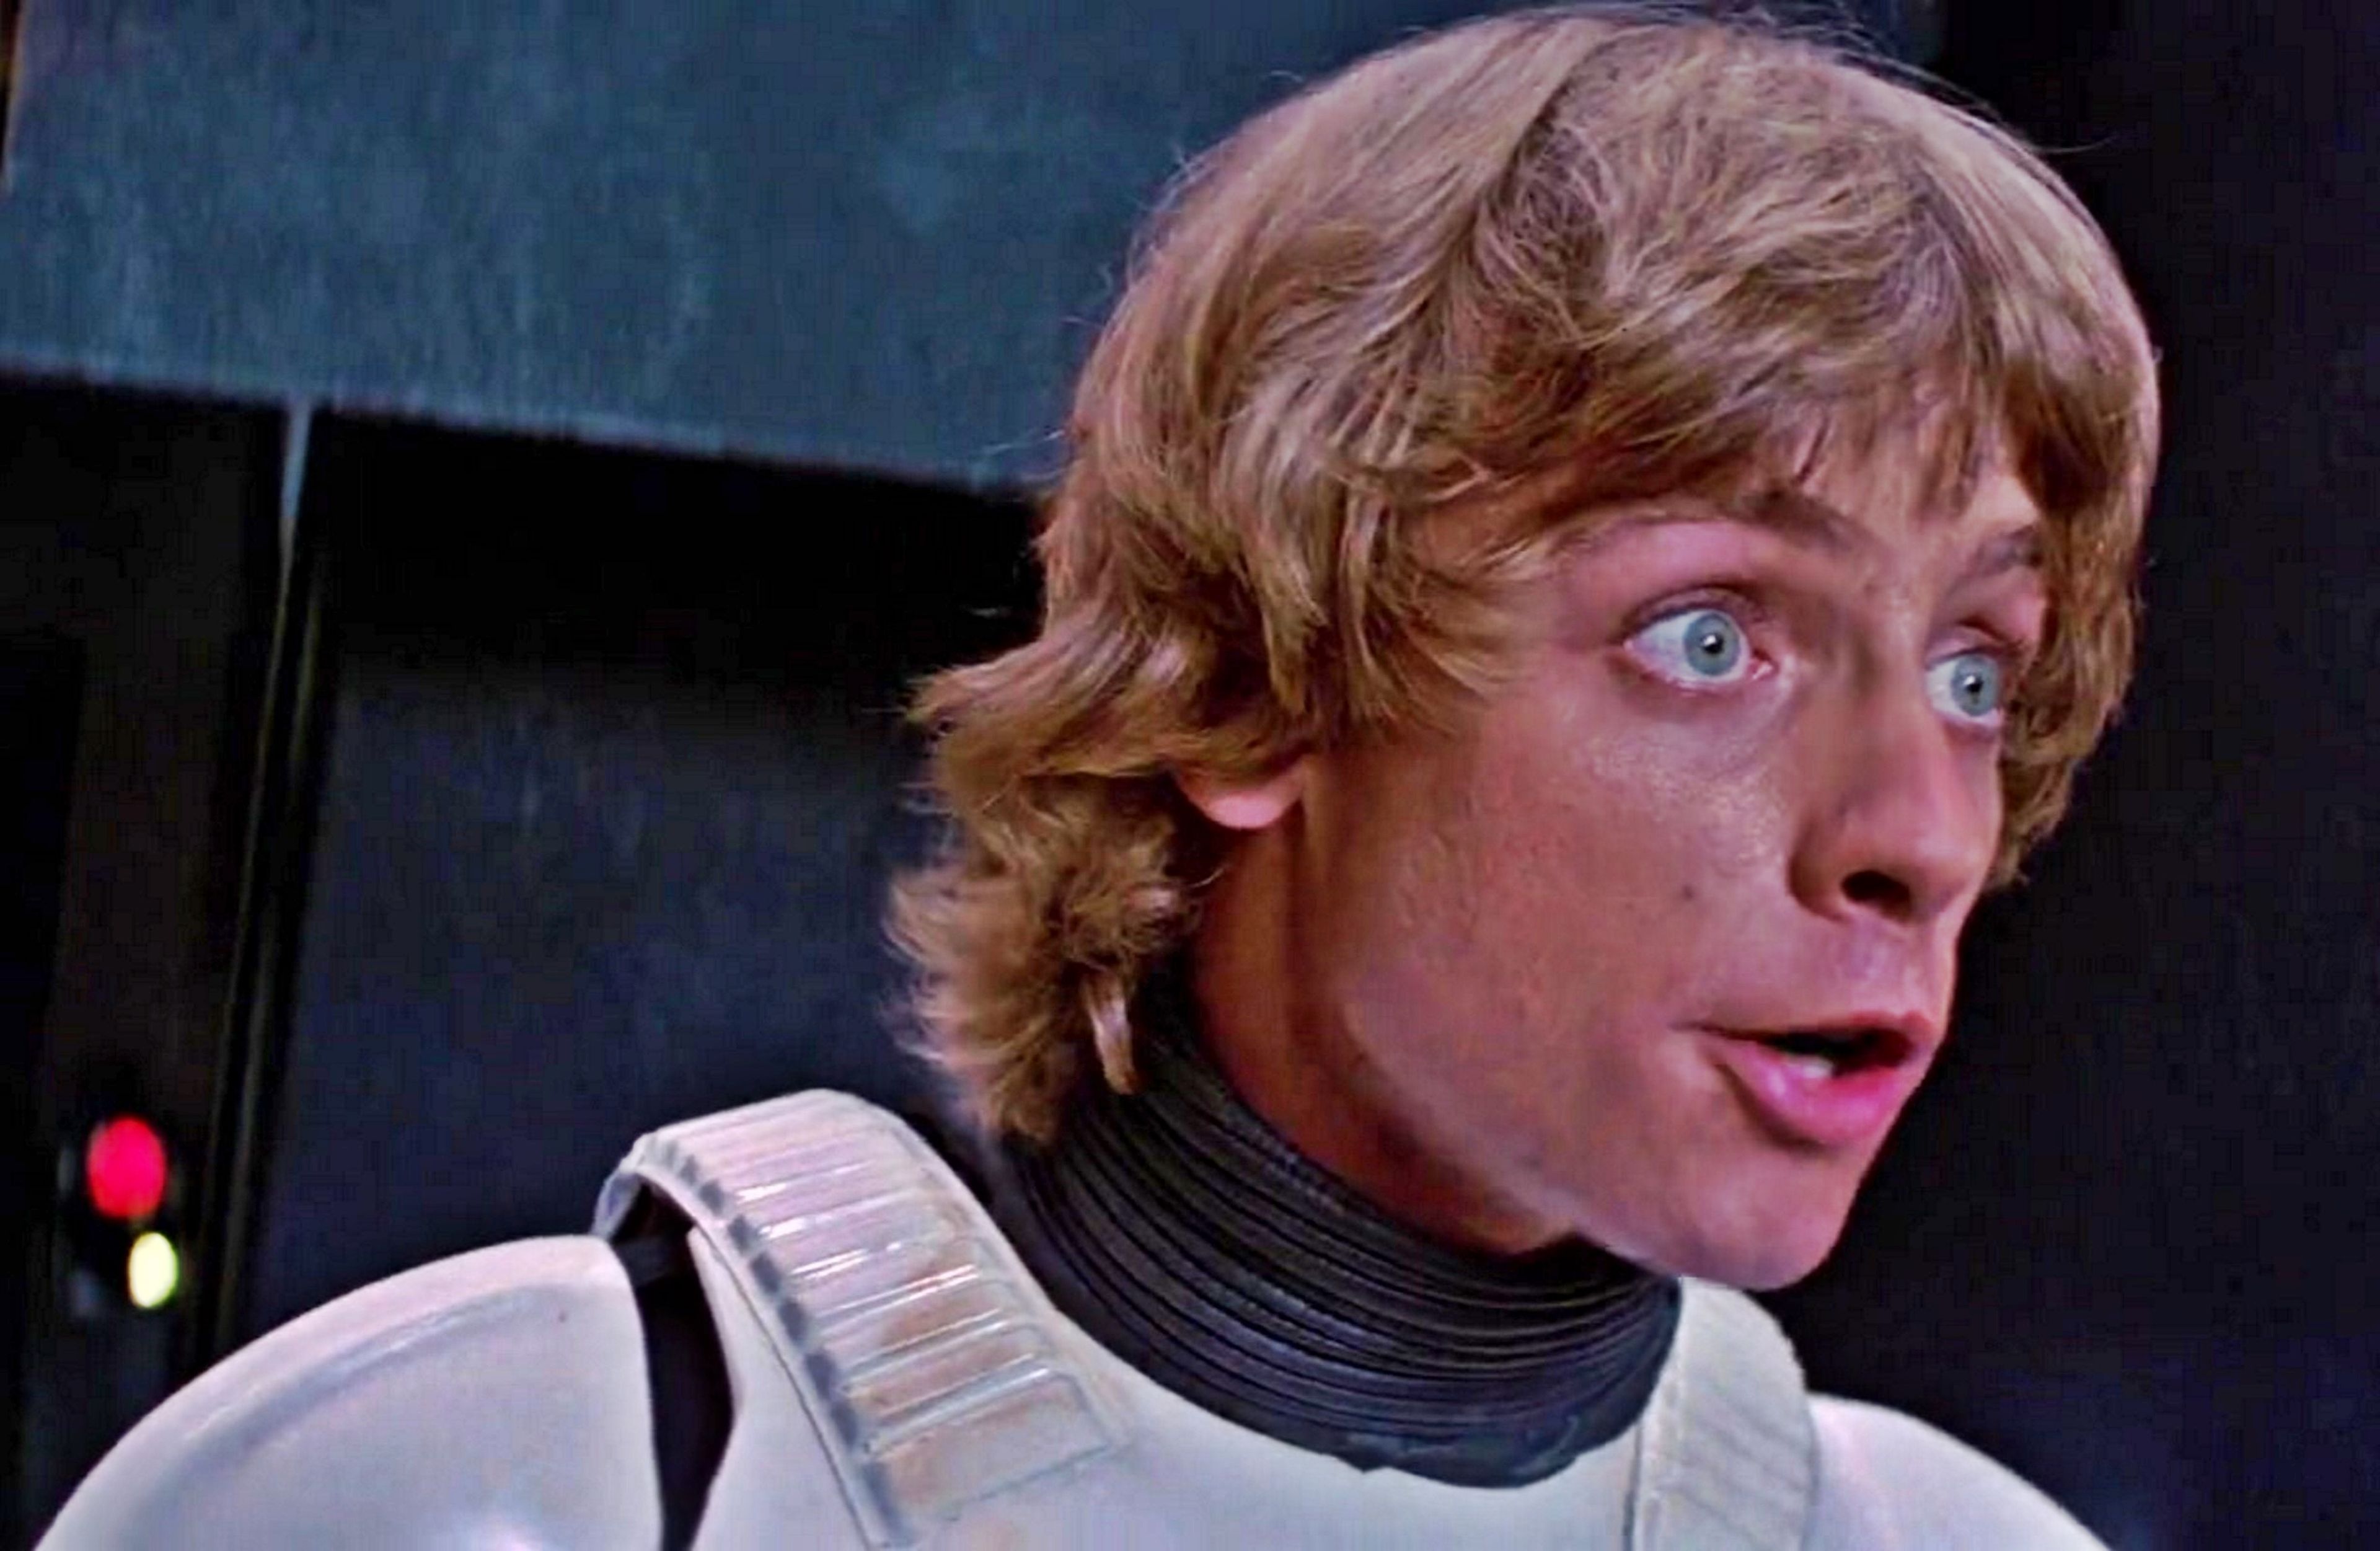 Star Wars 4 - Luke Skywalker